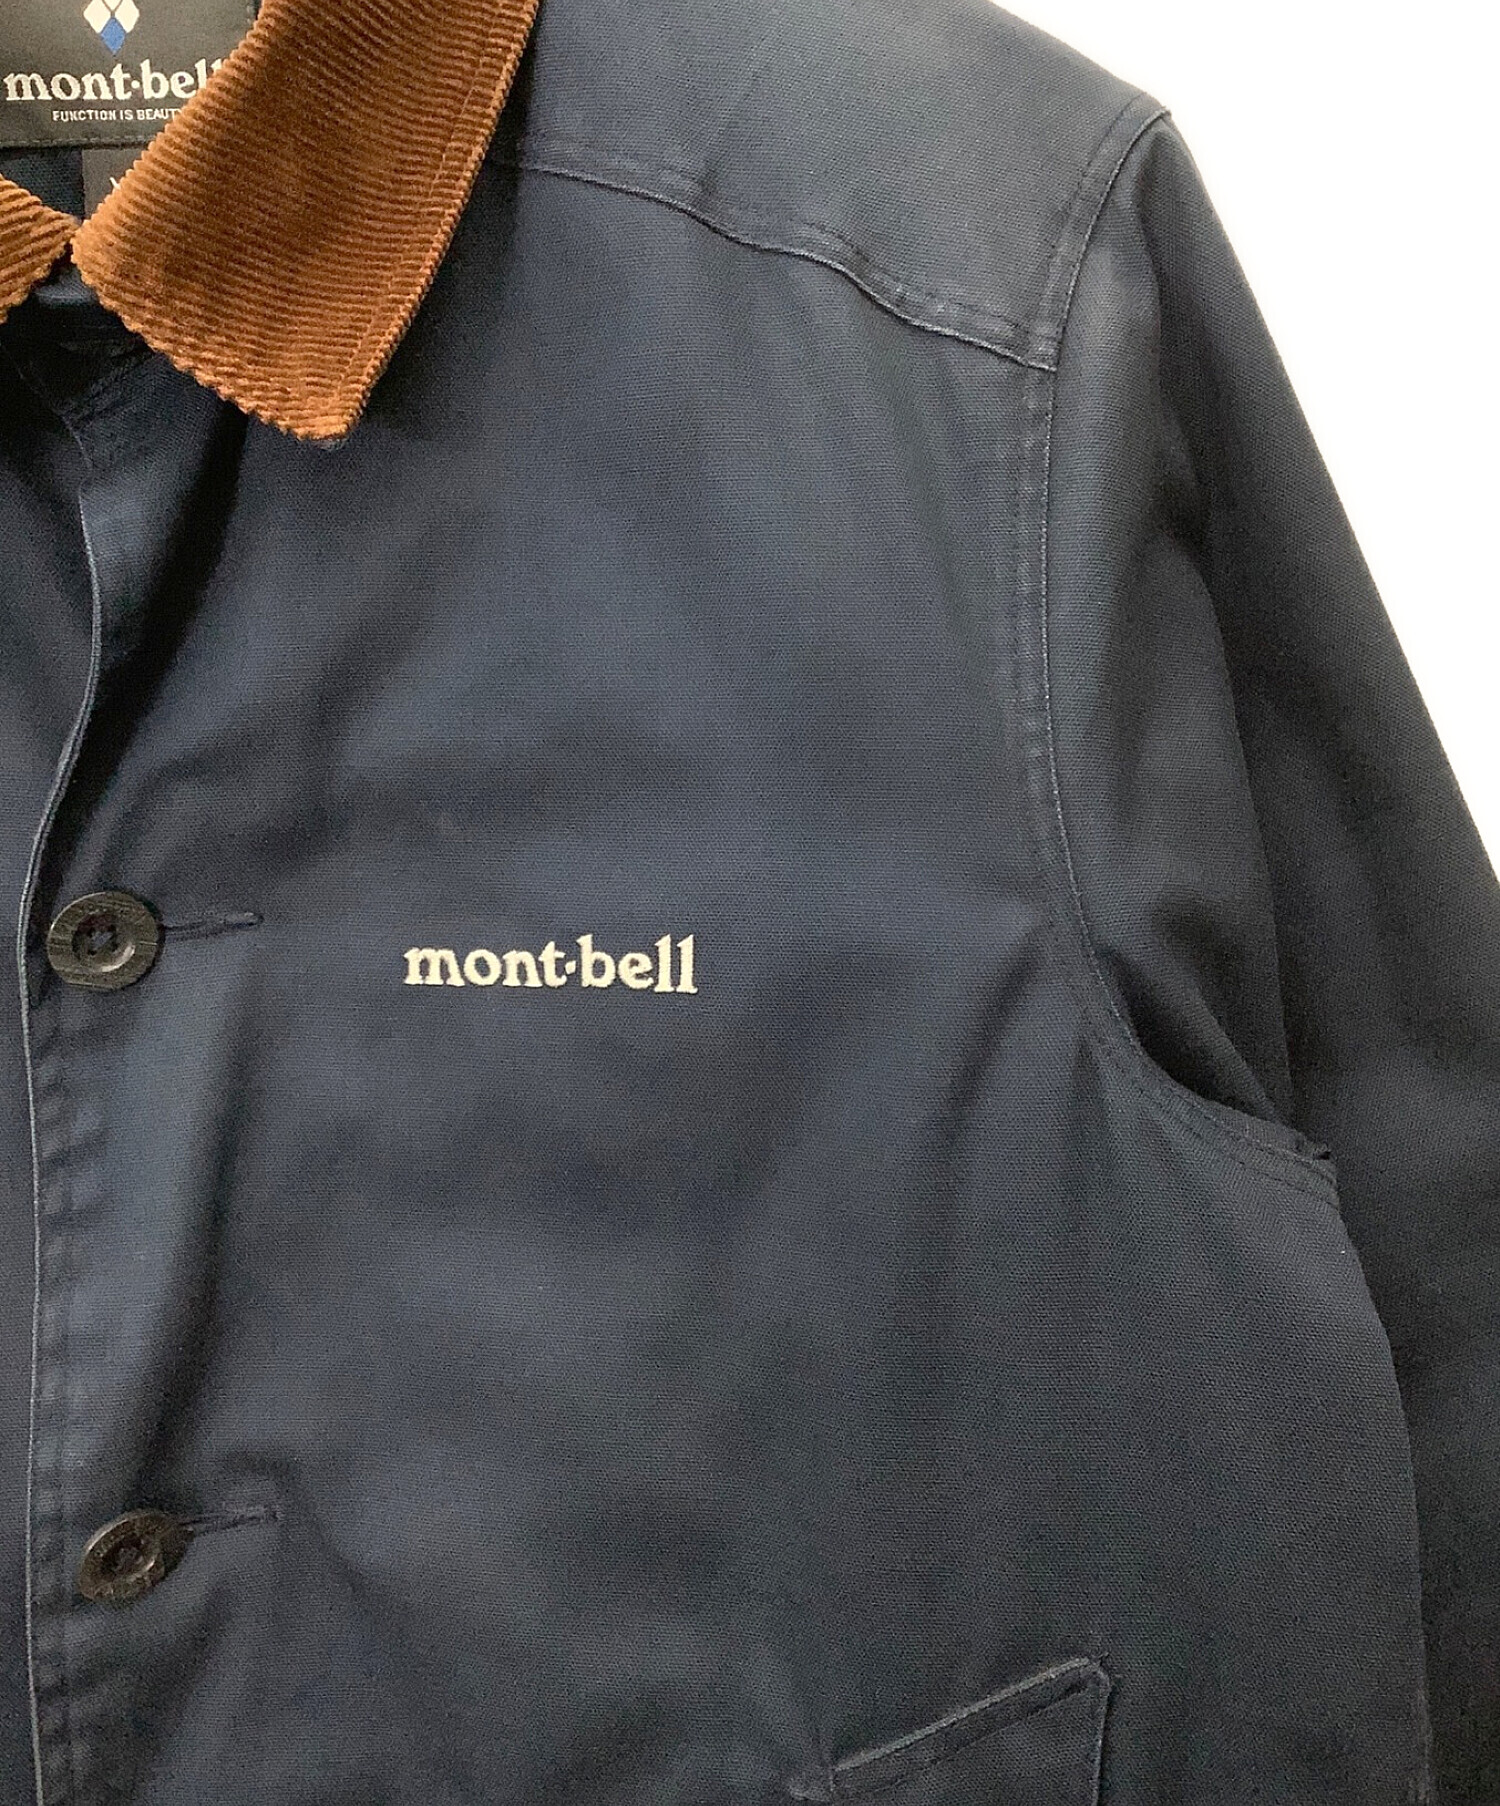 mont-bell (モンベル) キャンバスカントリー ダウンジャケット ネイビー サイズ:XS